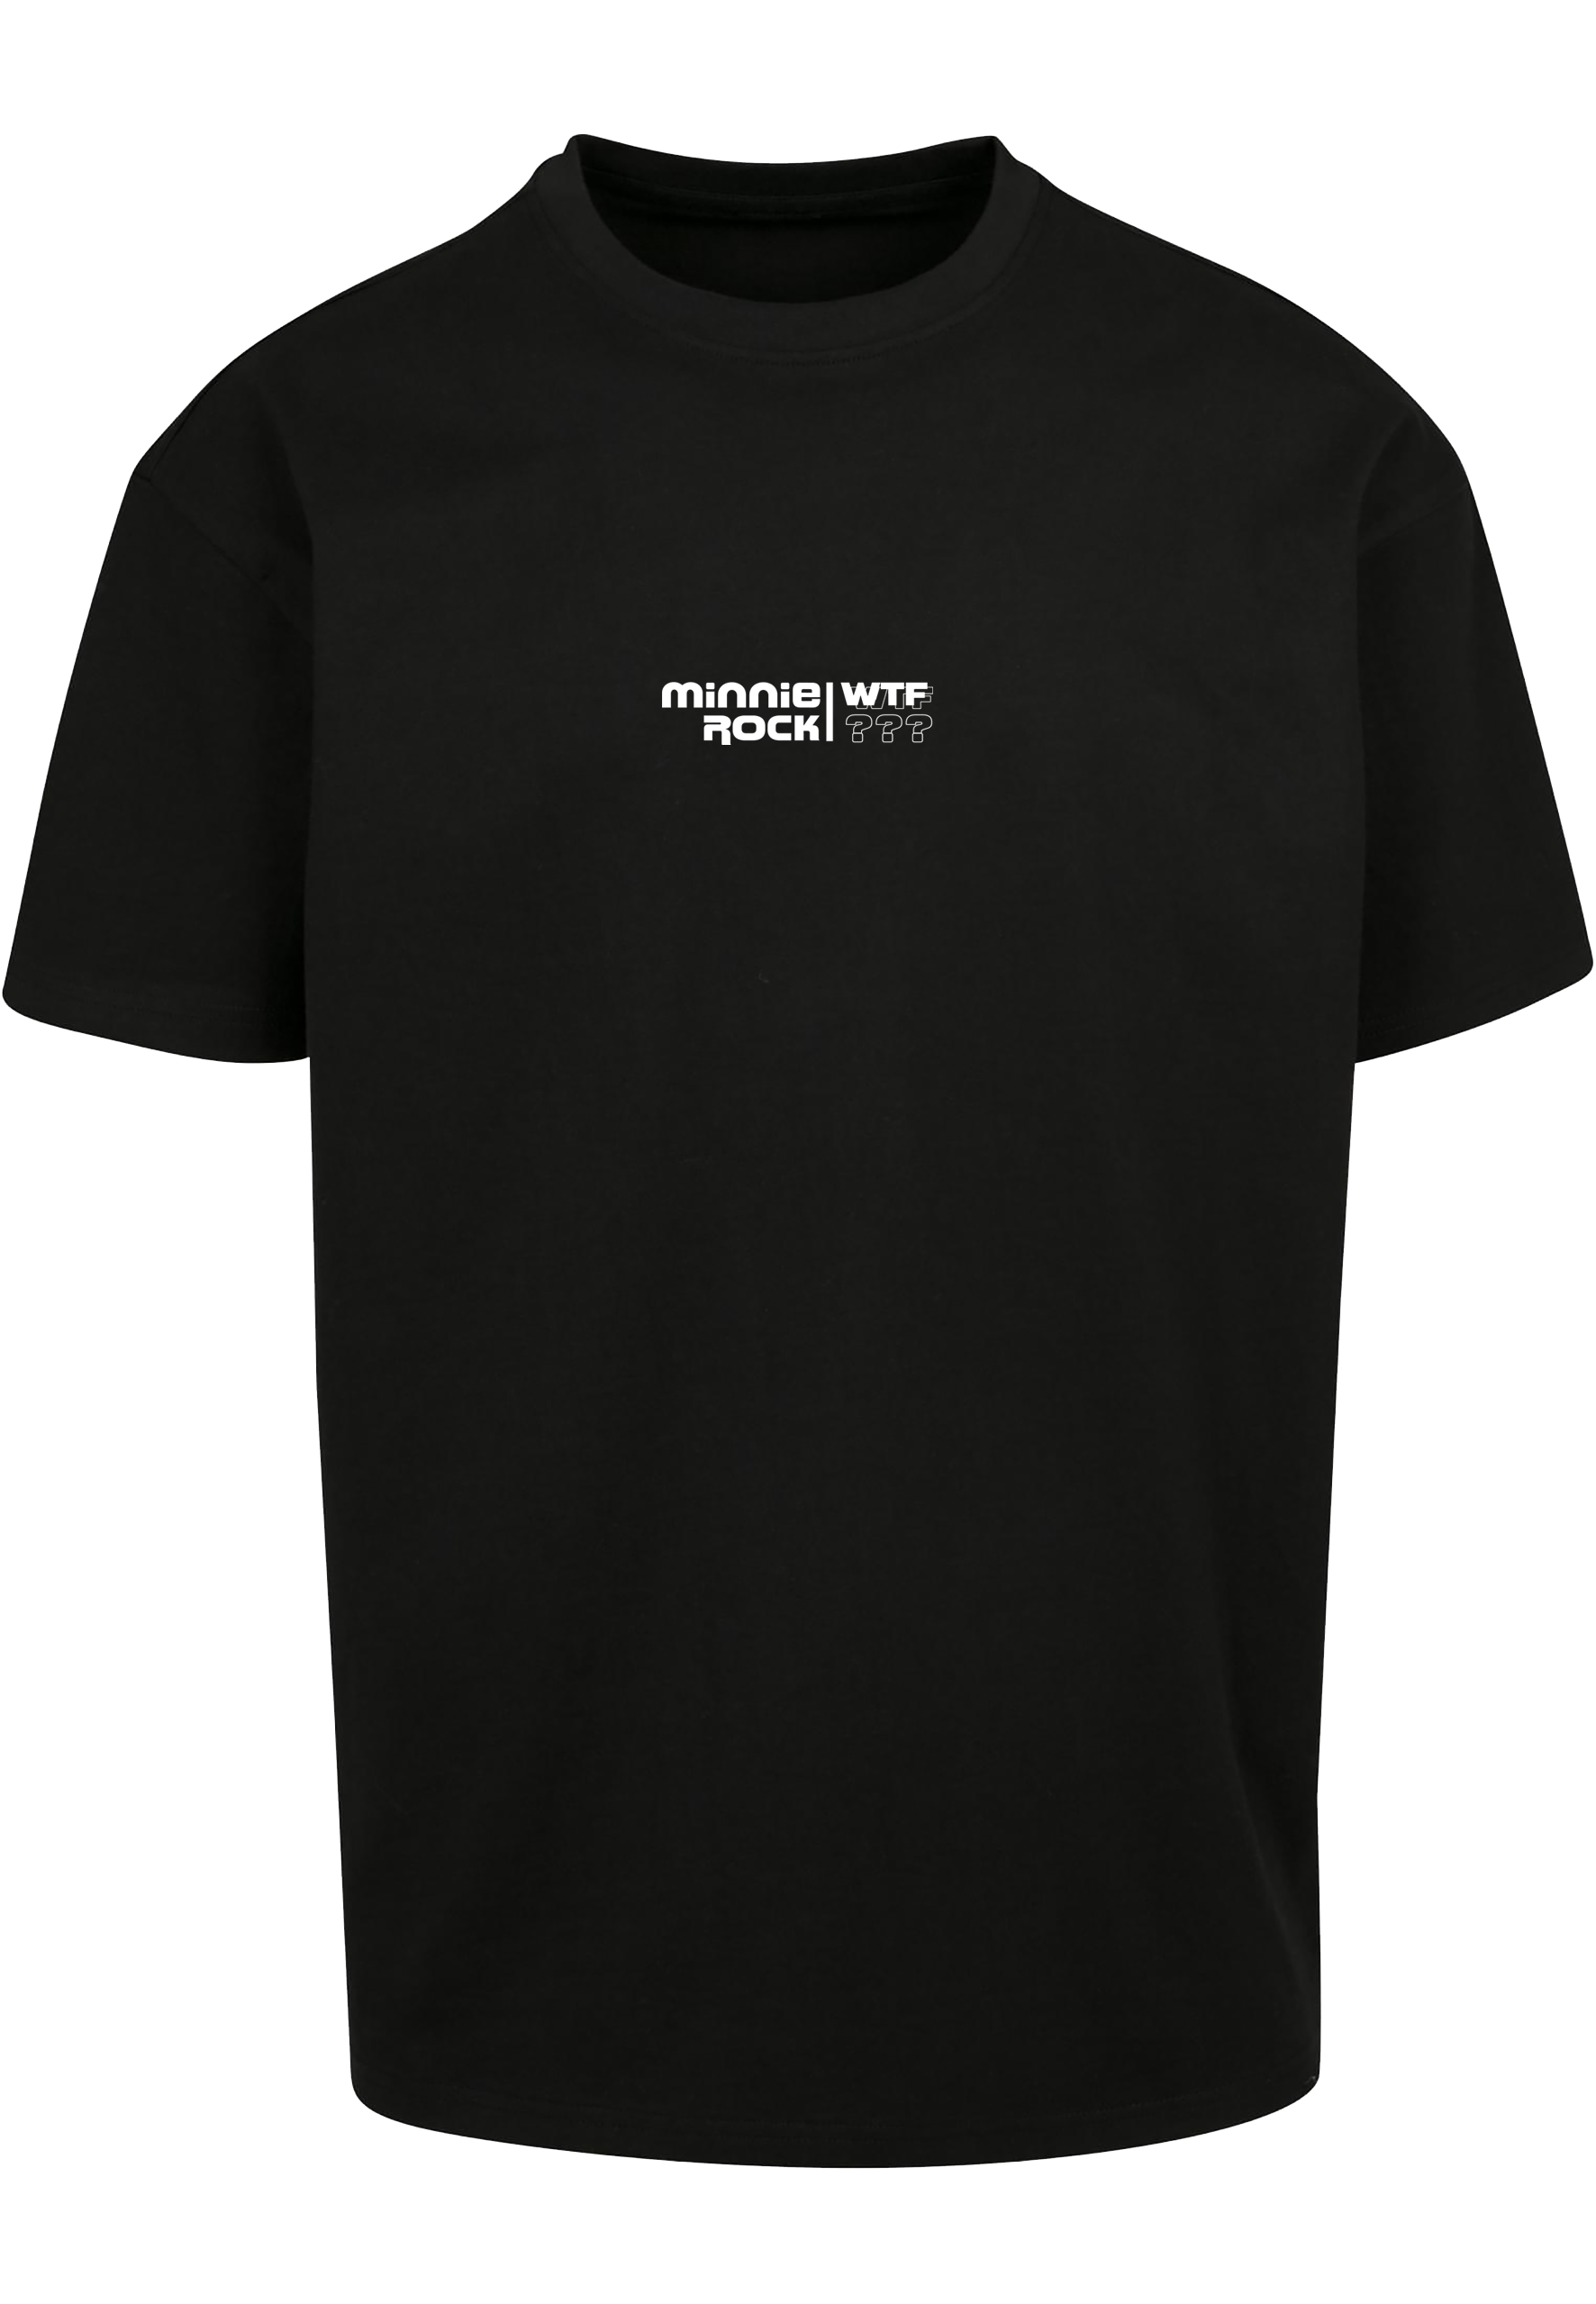 minnie rock - WTF is minnie - Unisex Oversized T-Shirt [schwarz]